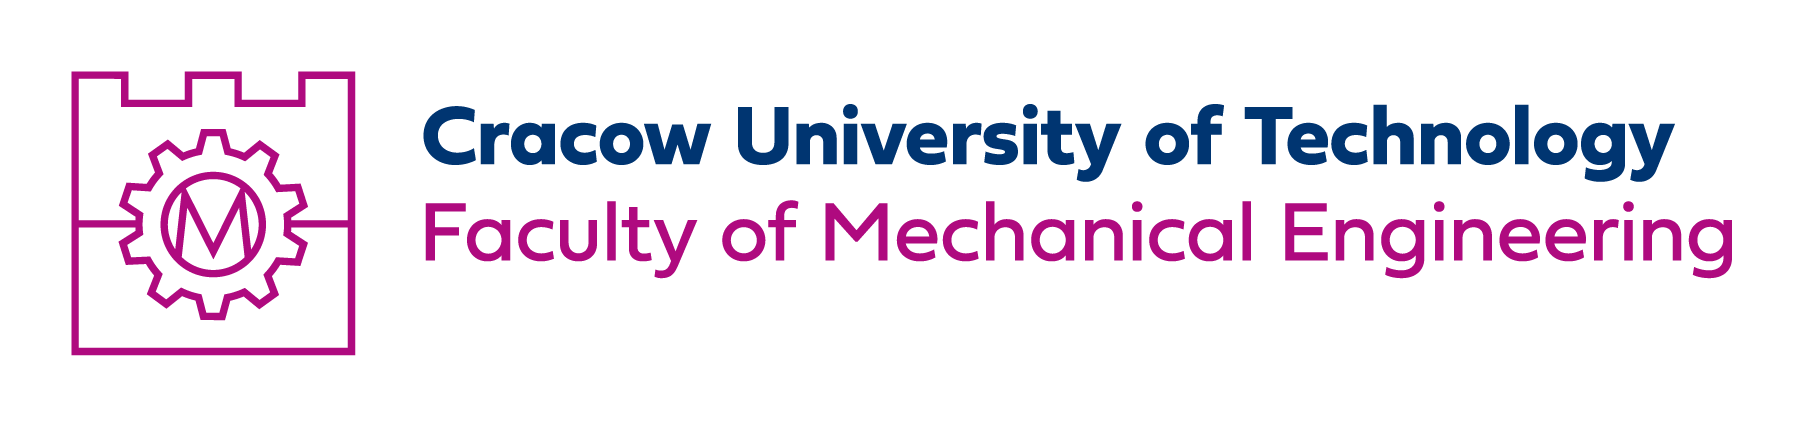 asymetryczne logo Wydziału Mechanicznego do stosowania samodzielnie lub z sygnetem Politechniki Krakowskiej